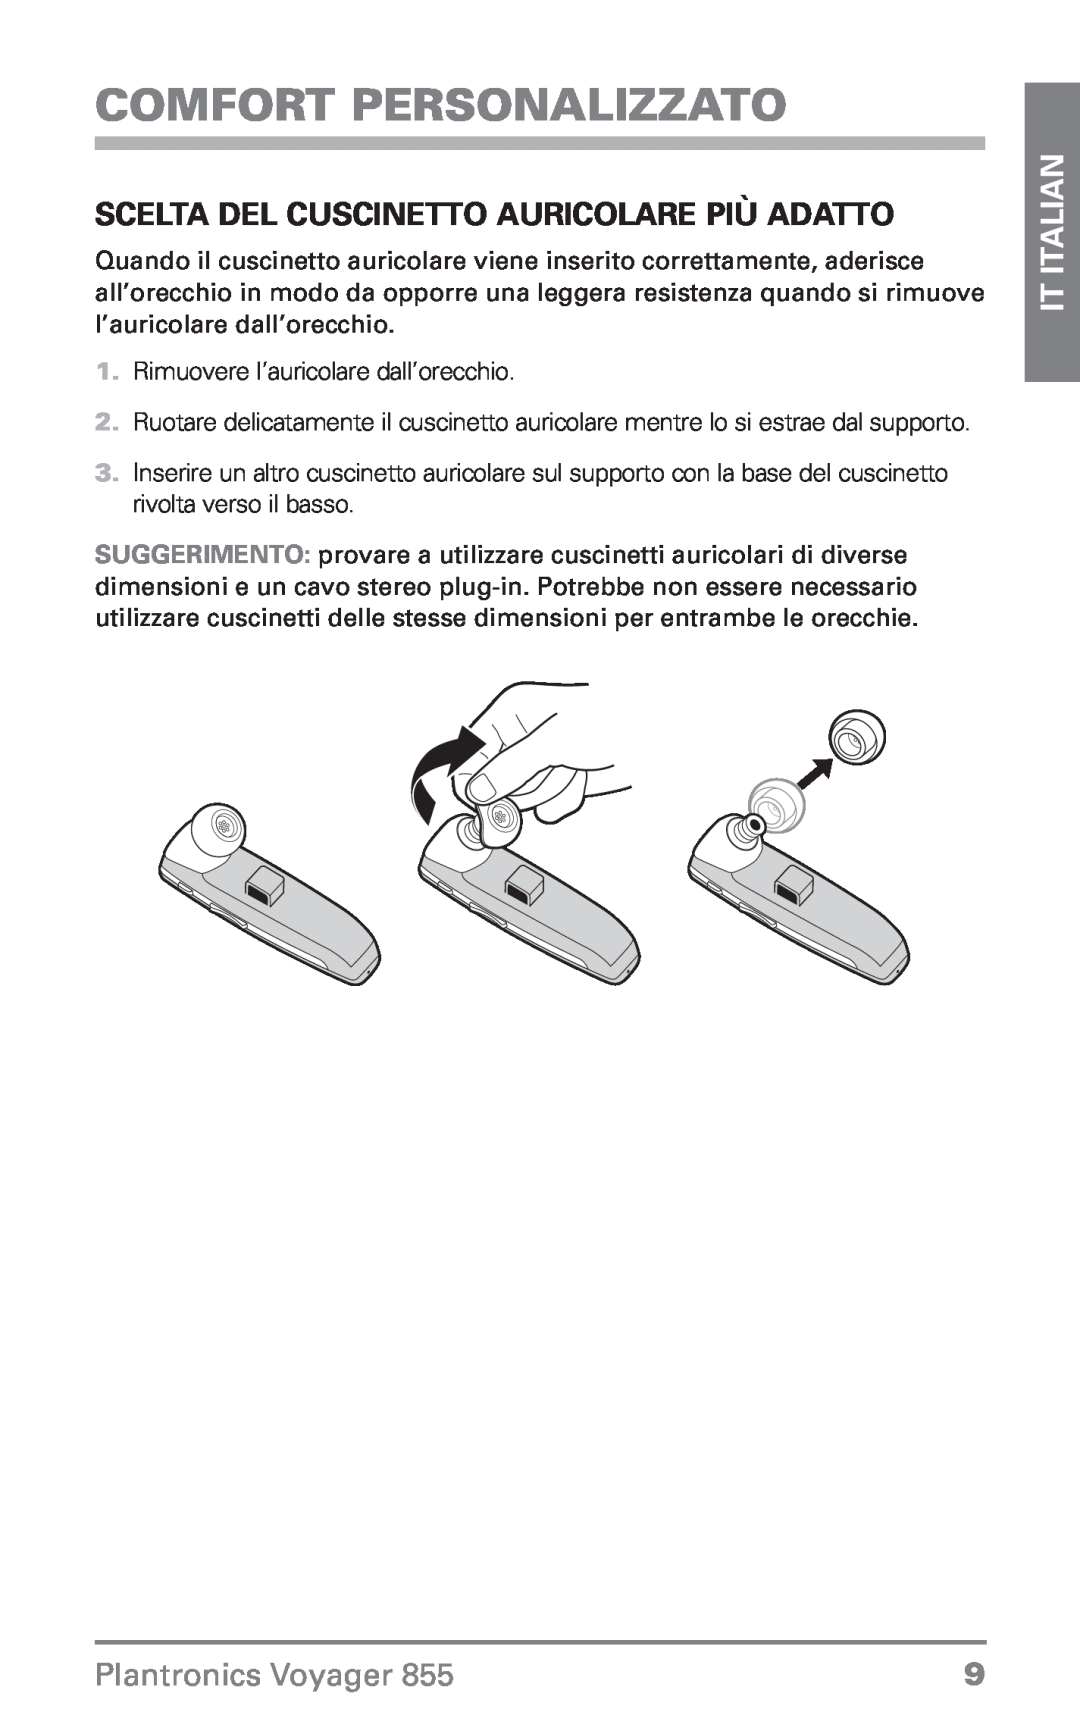 Plantronics Voyager 855 Scelta del cuscinetto auricolare più adatto, Comfort personalizzato, IT Italian 